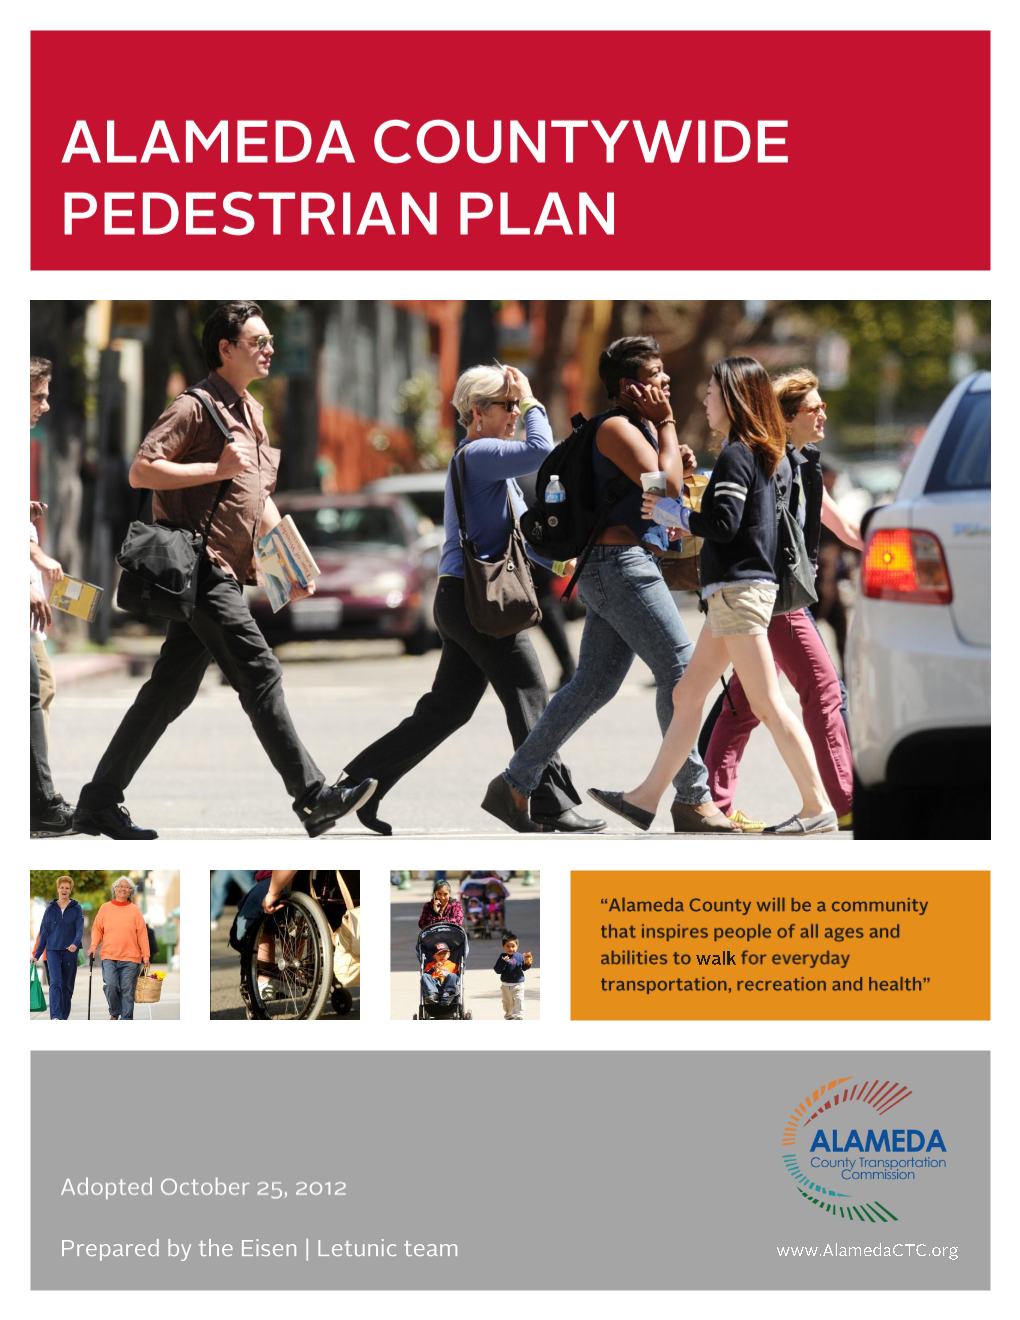 Countywide Pedestrian Plan in 2006